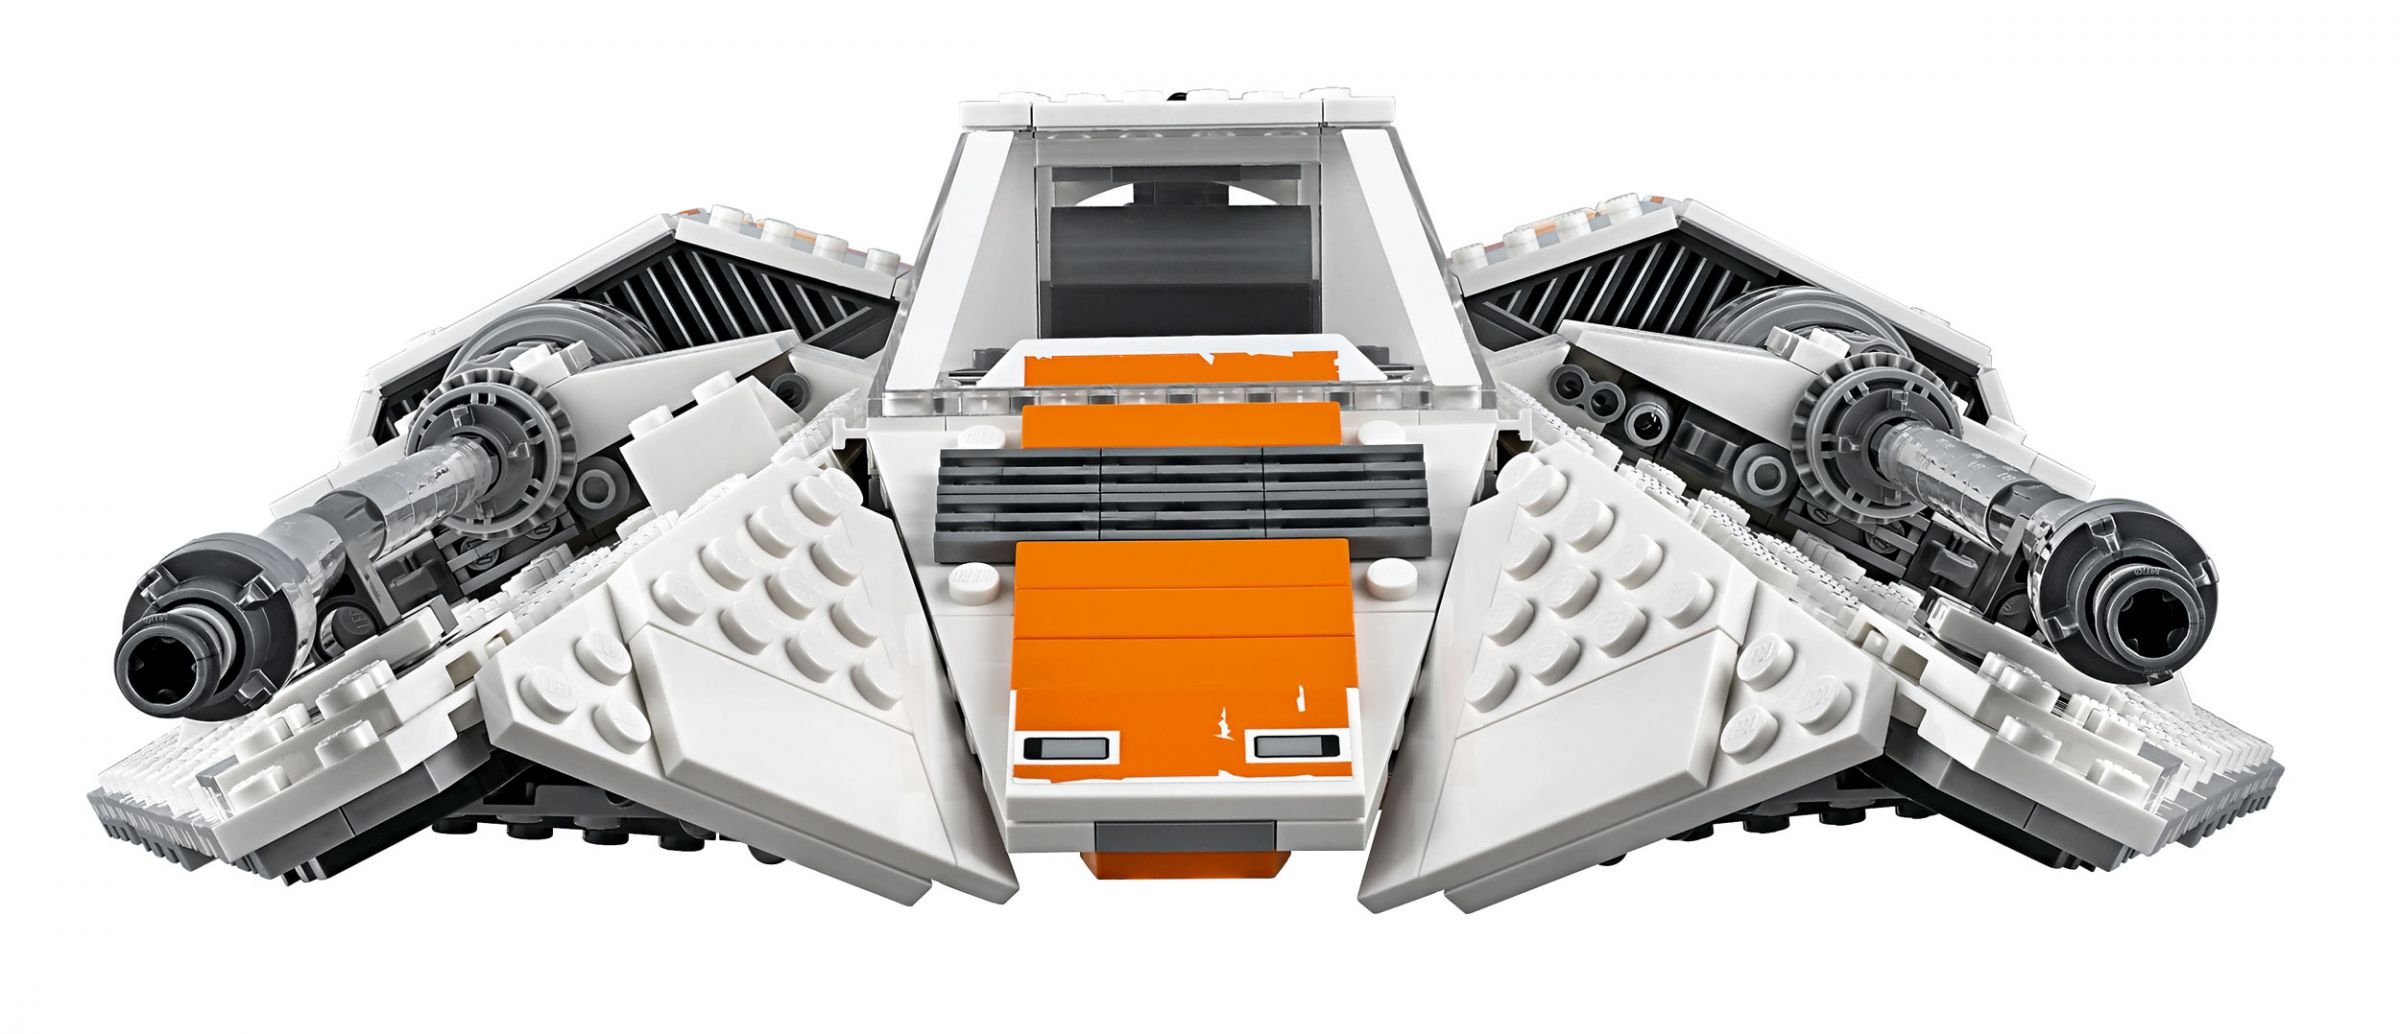 LEGO Star Wars 75144 Snowspeeder™ LEGO_Star_Wars_75144_Snowspeeder_UCS_img03.jpg